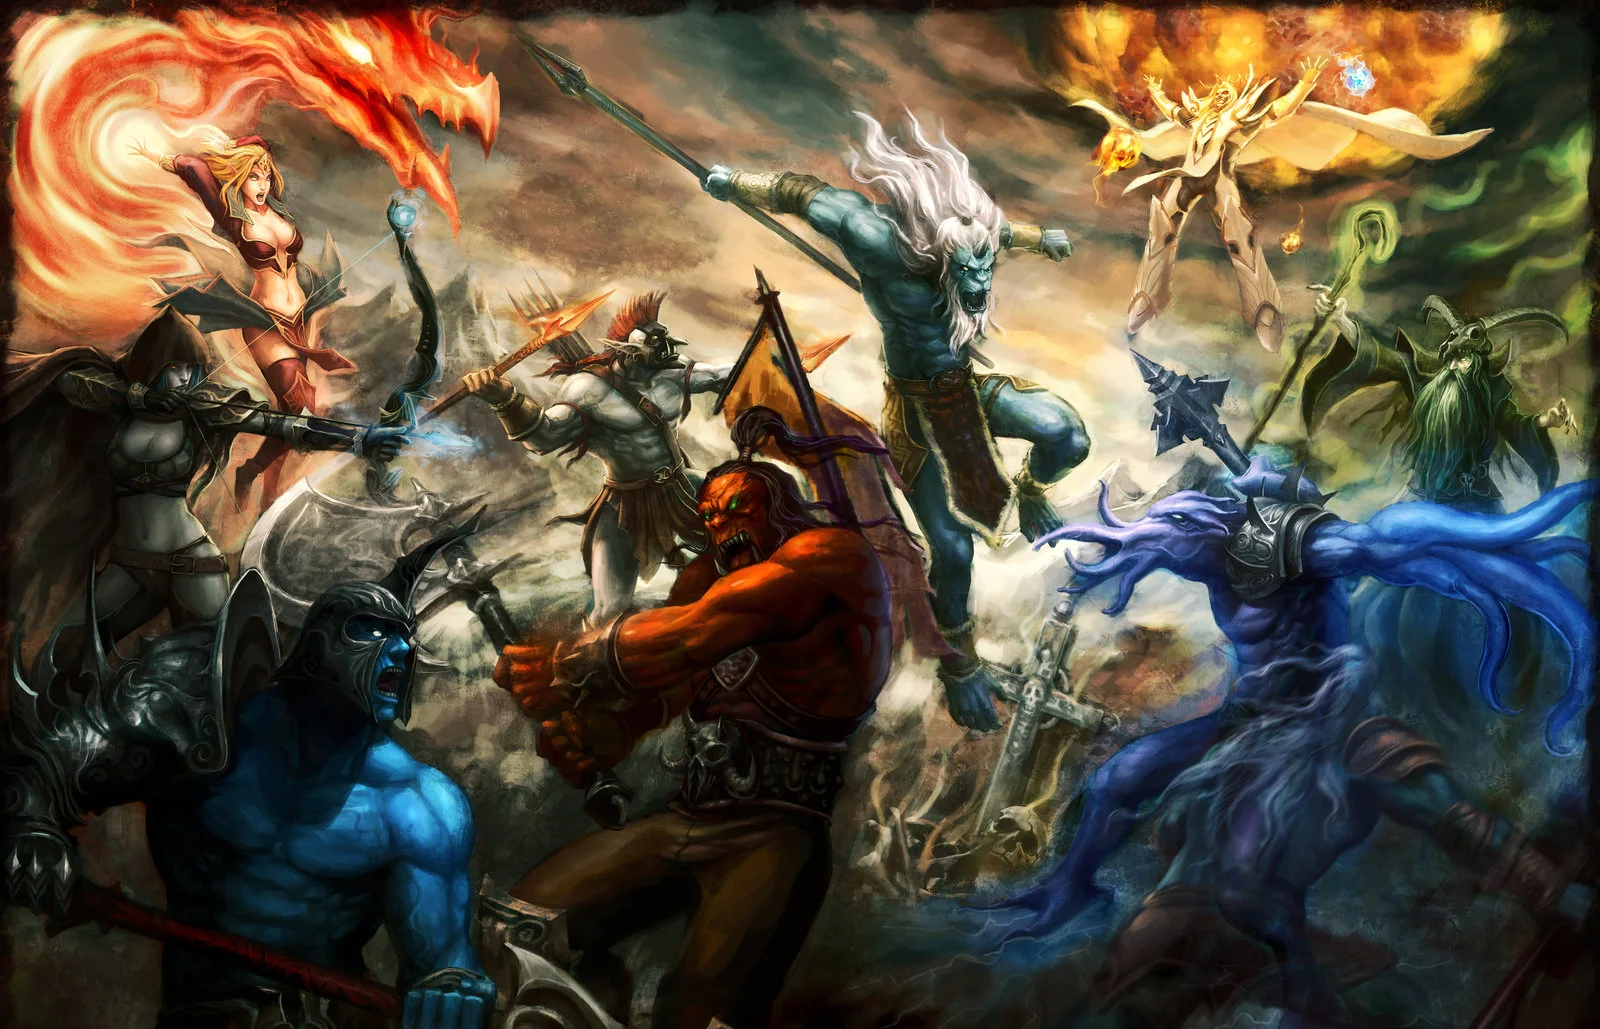 Dota 2 появилась из модификации для WarCraft III — Defence of the Ancient. Чтобы избежать проблем с авторскими правами, Valve поменяла почти всех героев. Но помните ли вы, как выглядели персонажи из первой «Доты»?